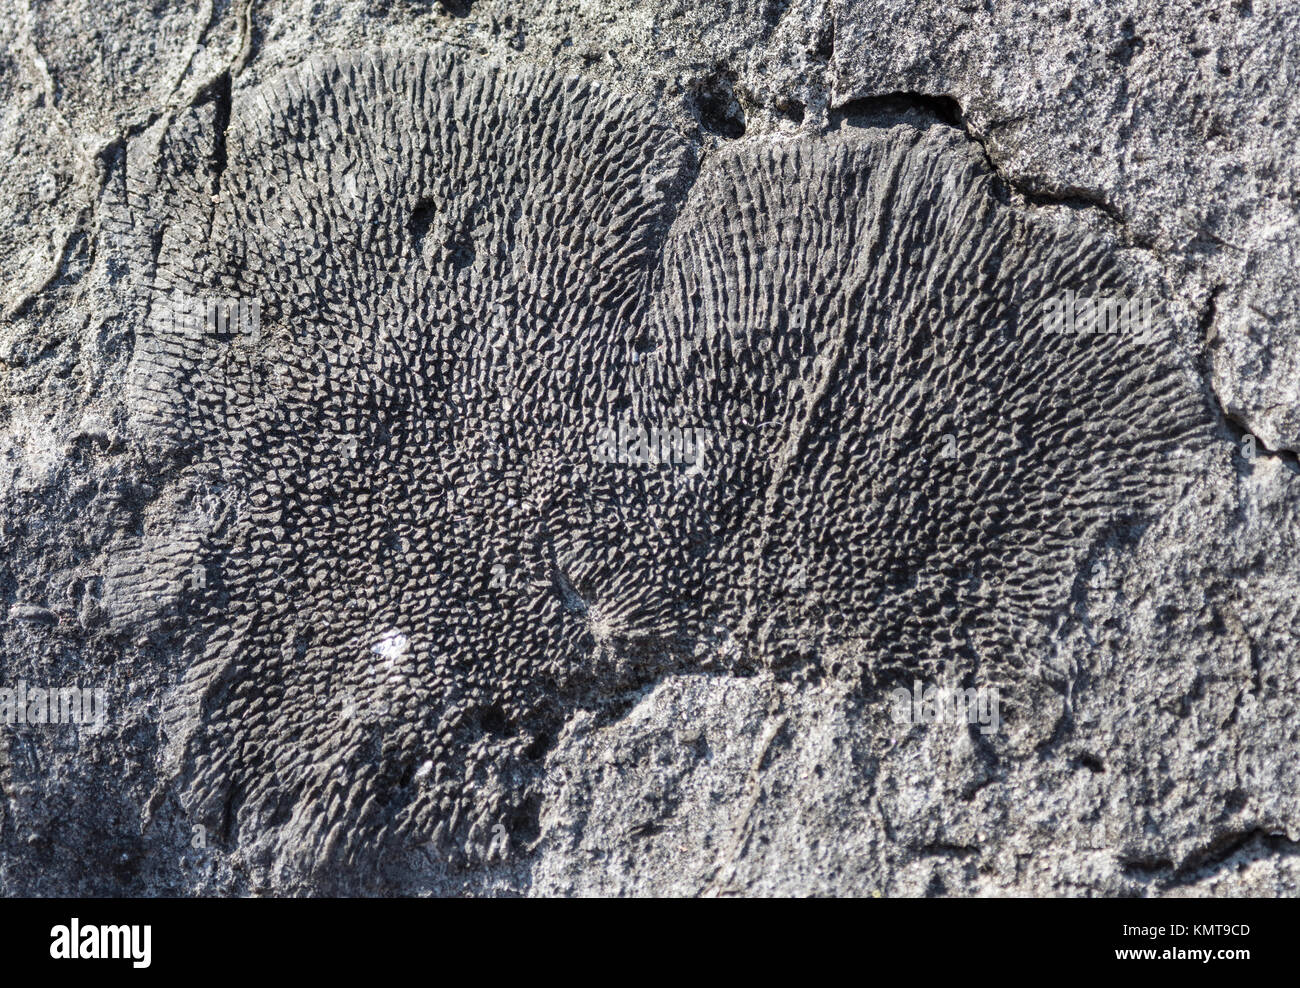 Coralli fossili conservati nel calcare giurassico in Tsingy de Bemaraha National Park. Madagascar, Africa. Foto Stock